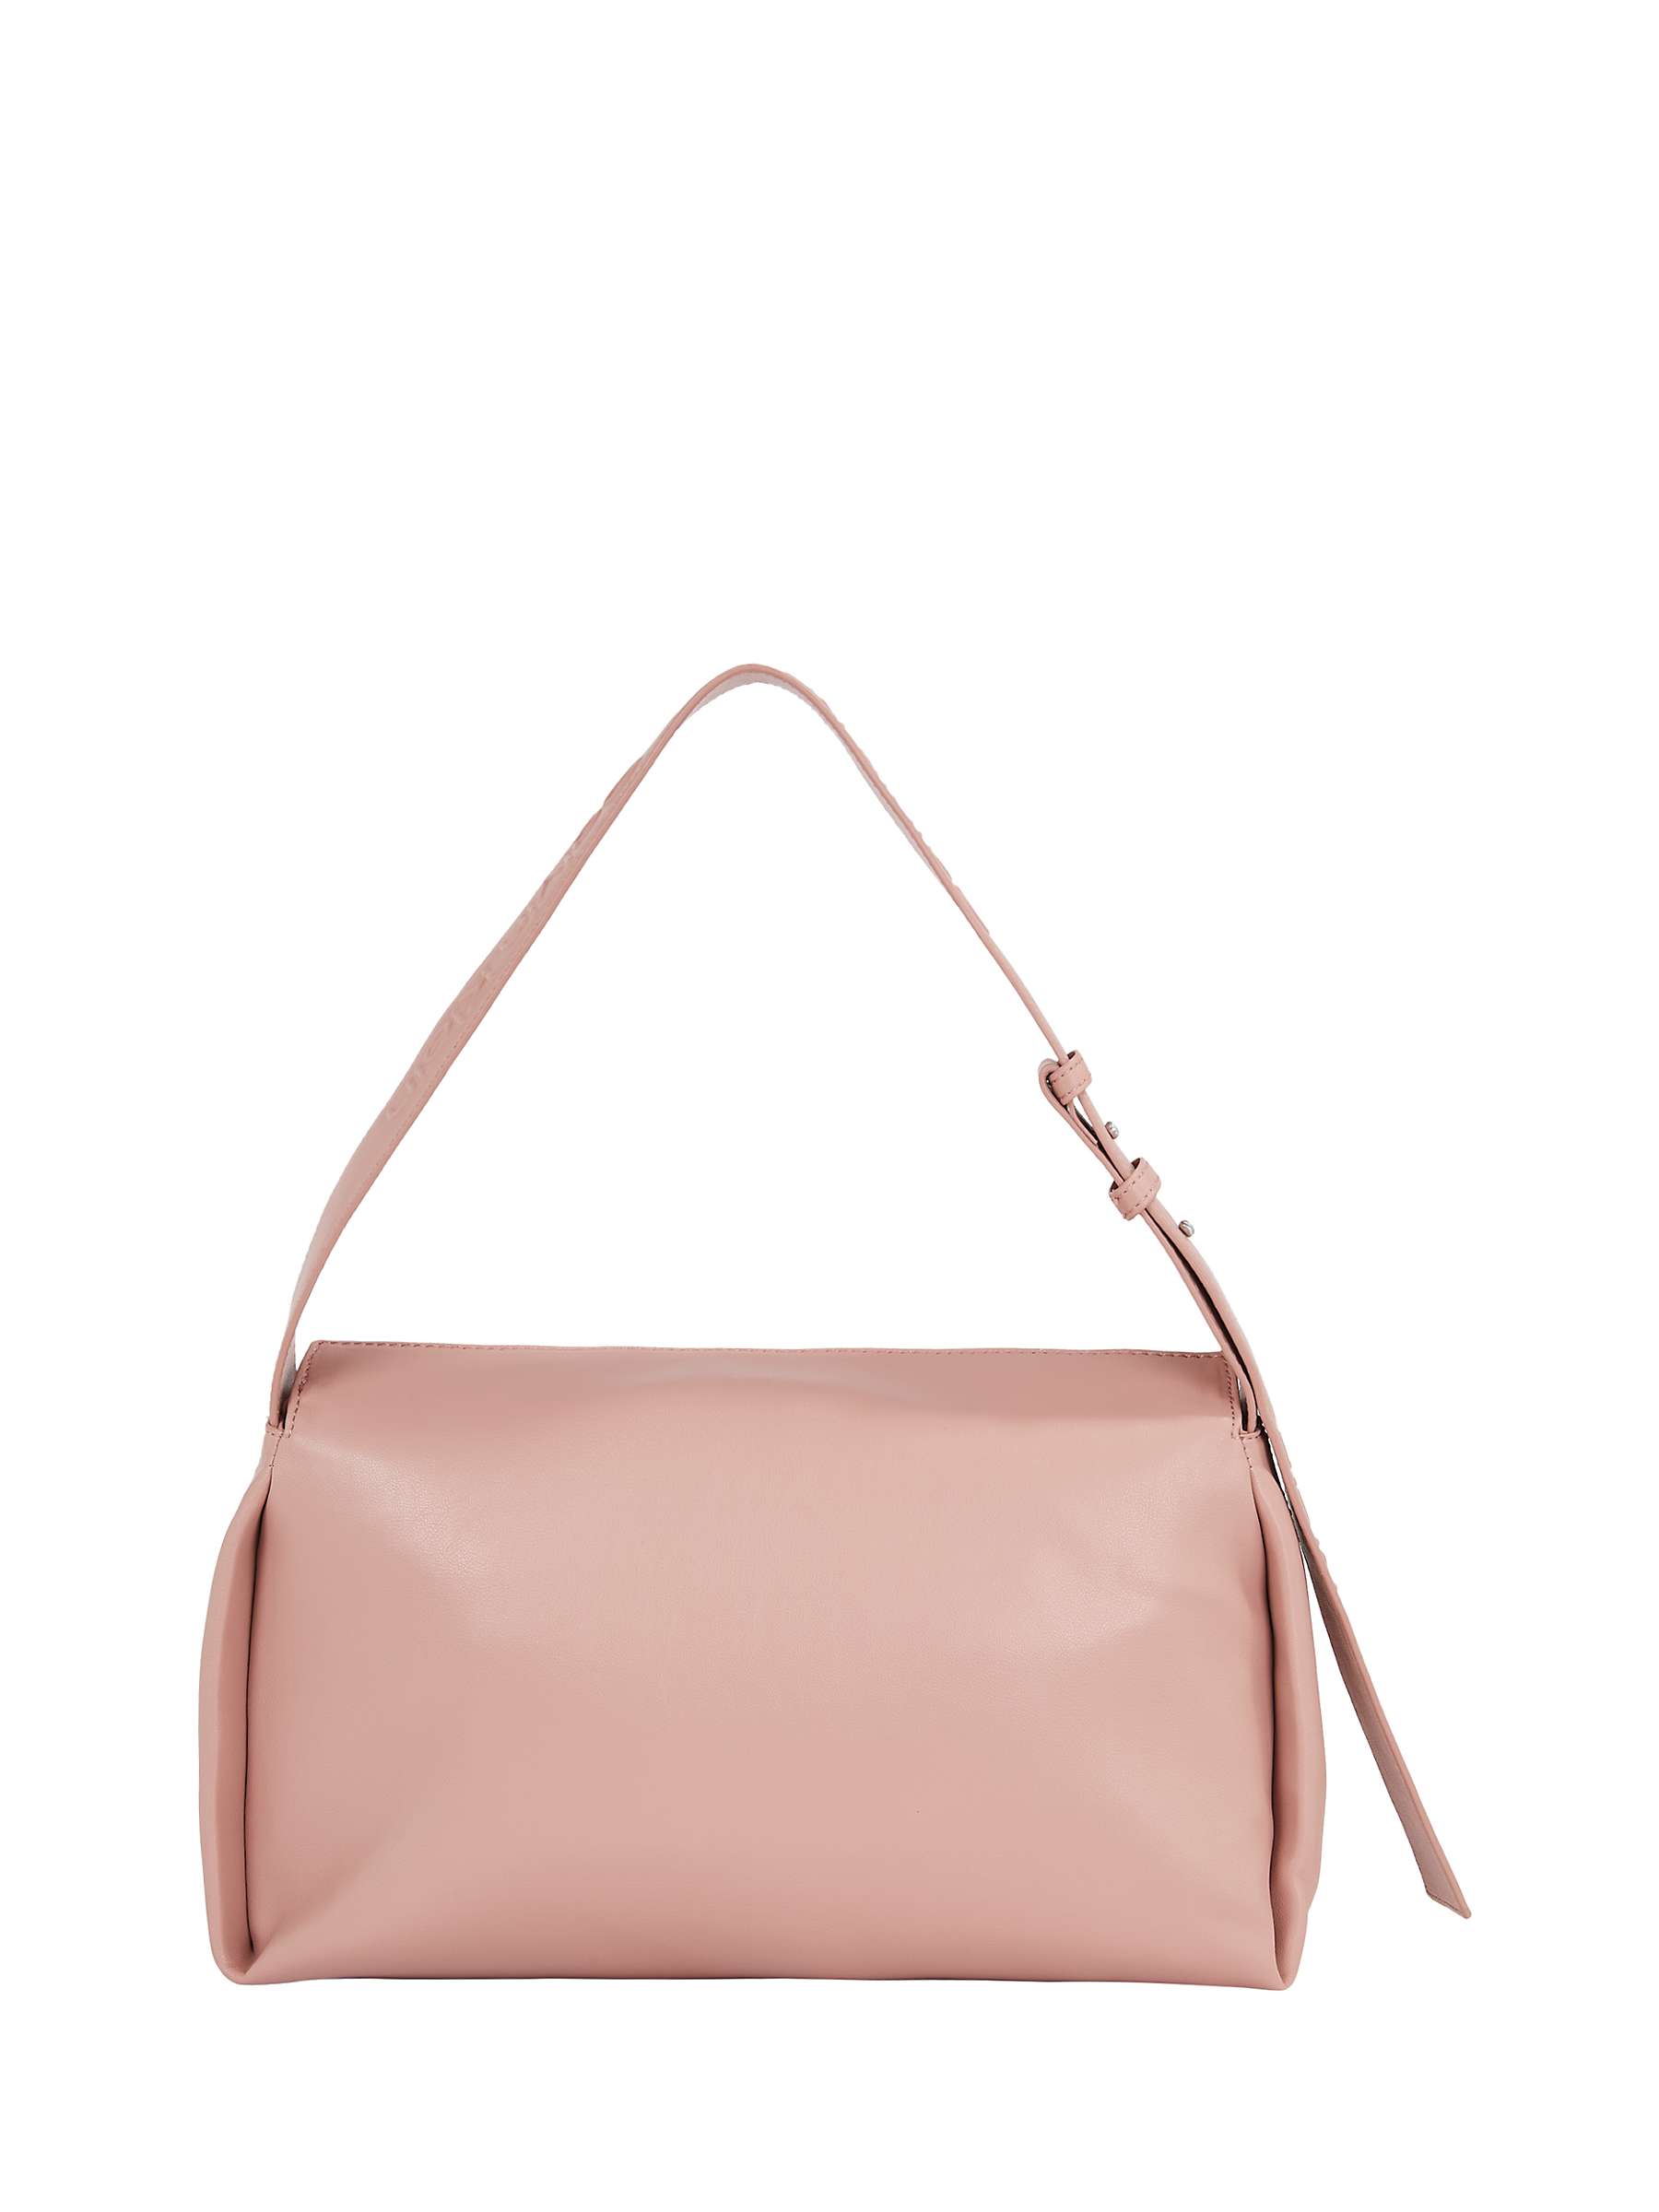 Buy Calvin Klein Gracie Shoulder Bag, Ash Rose Online at johnlewis.com